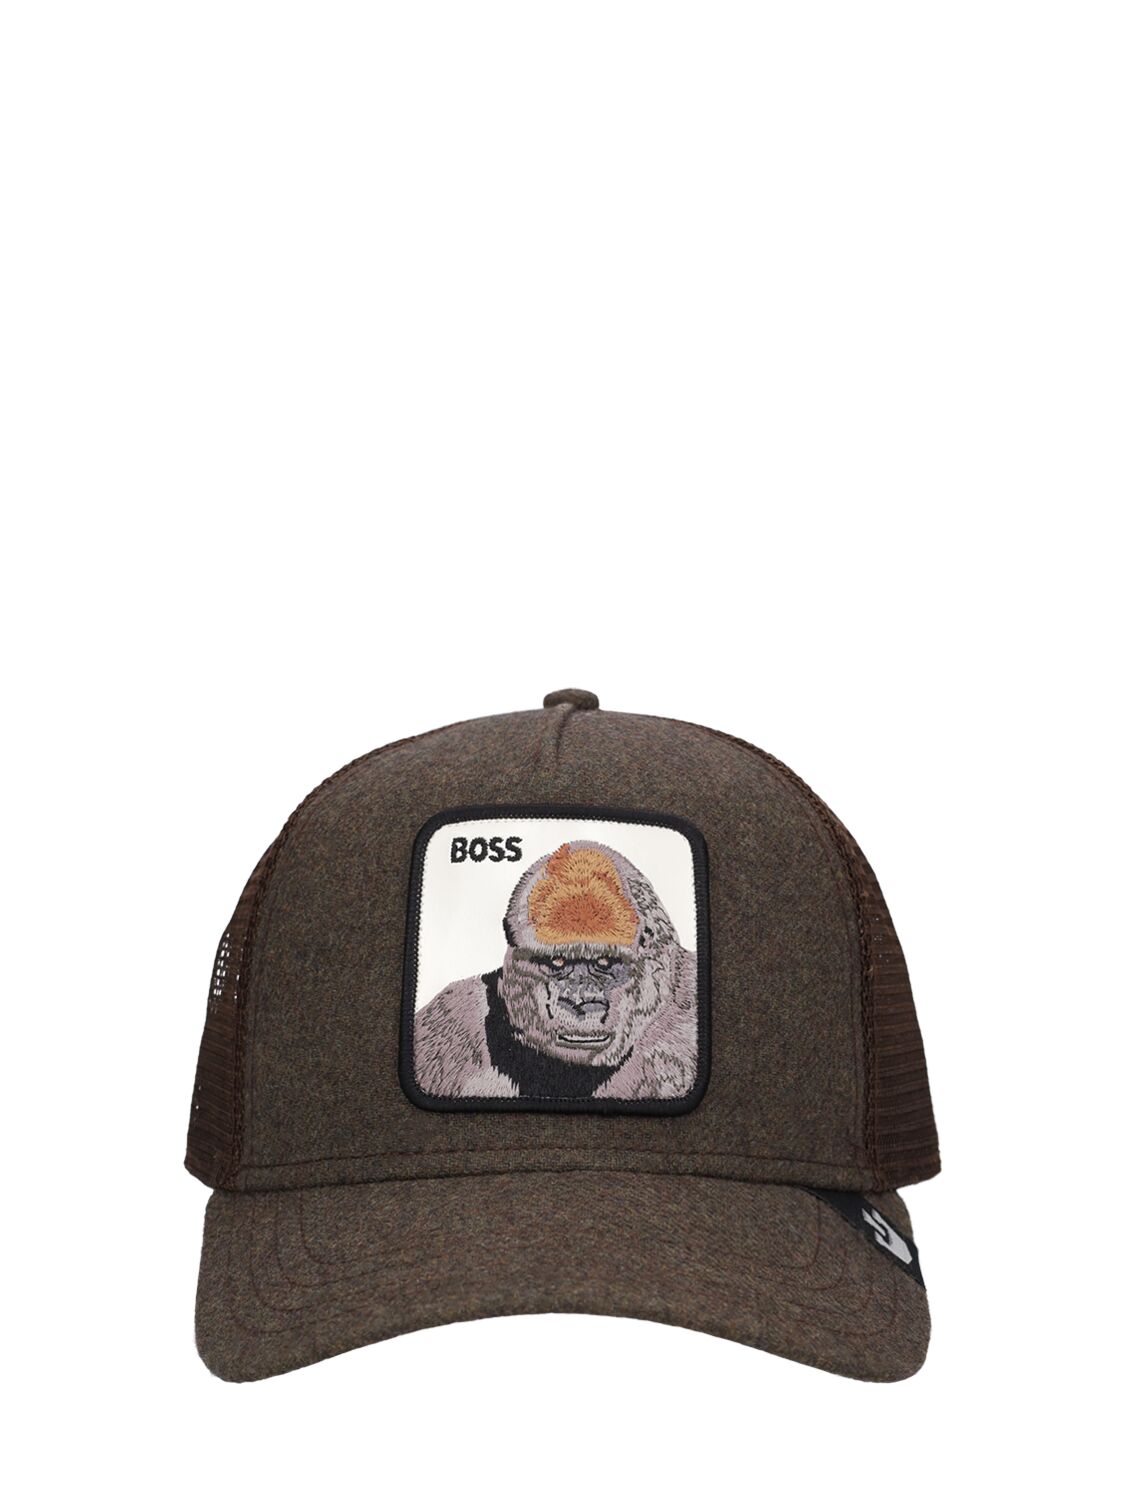 Image of Boss Energy Trucker Hat